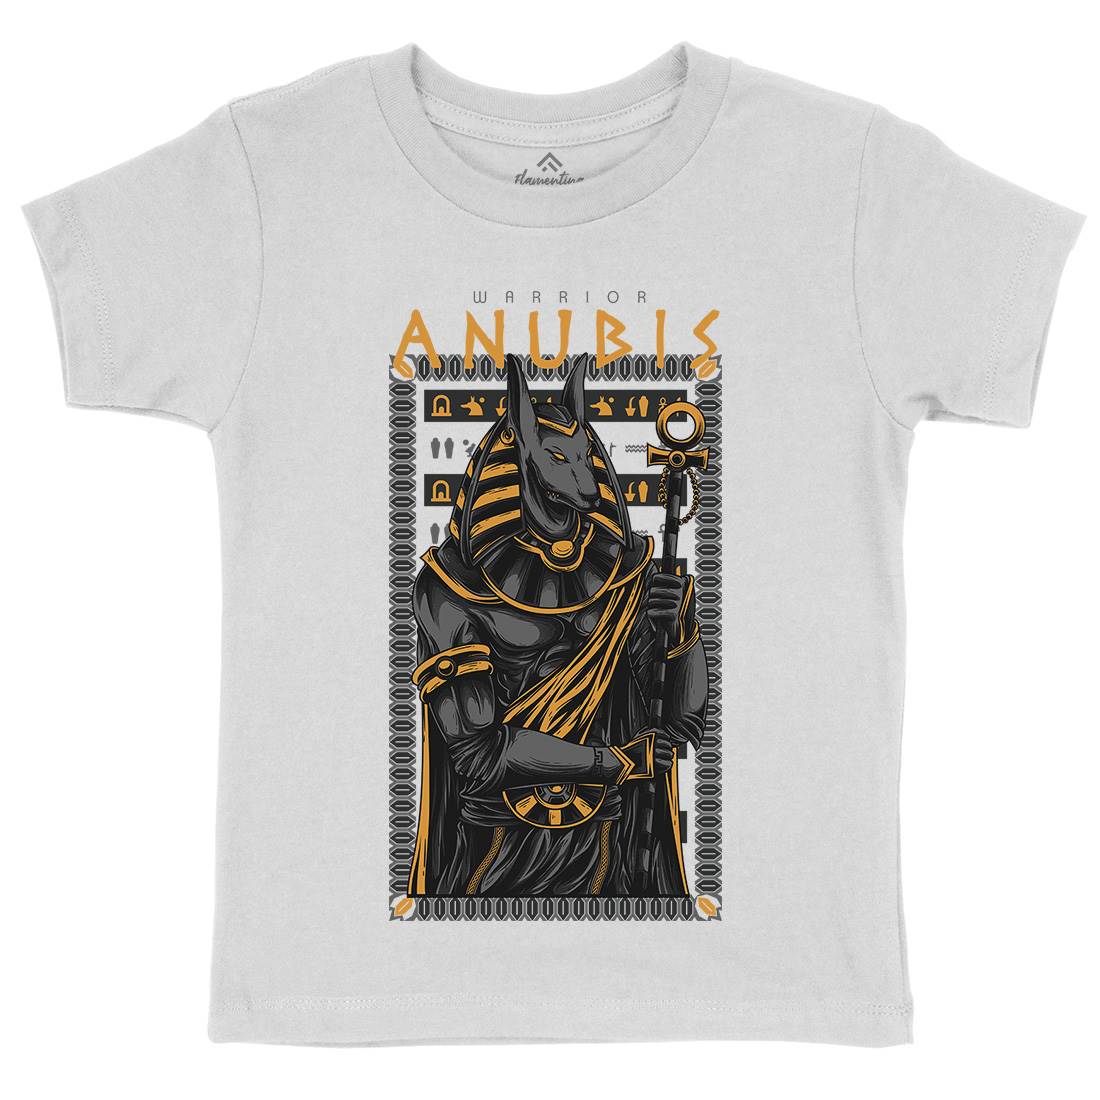 Anubis God Kids Crew Neck T-Shirt Warriors D706